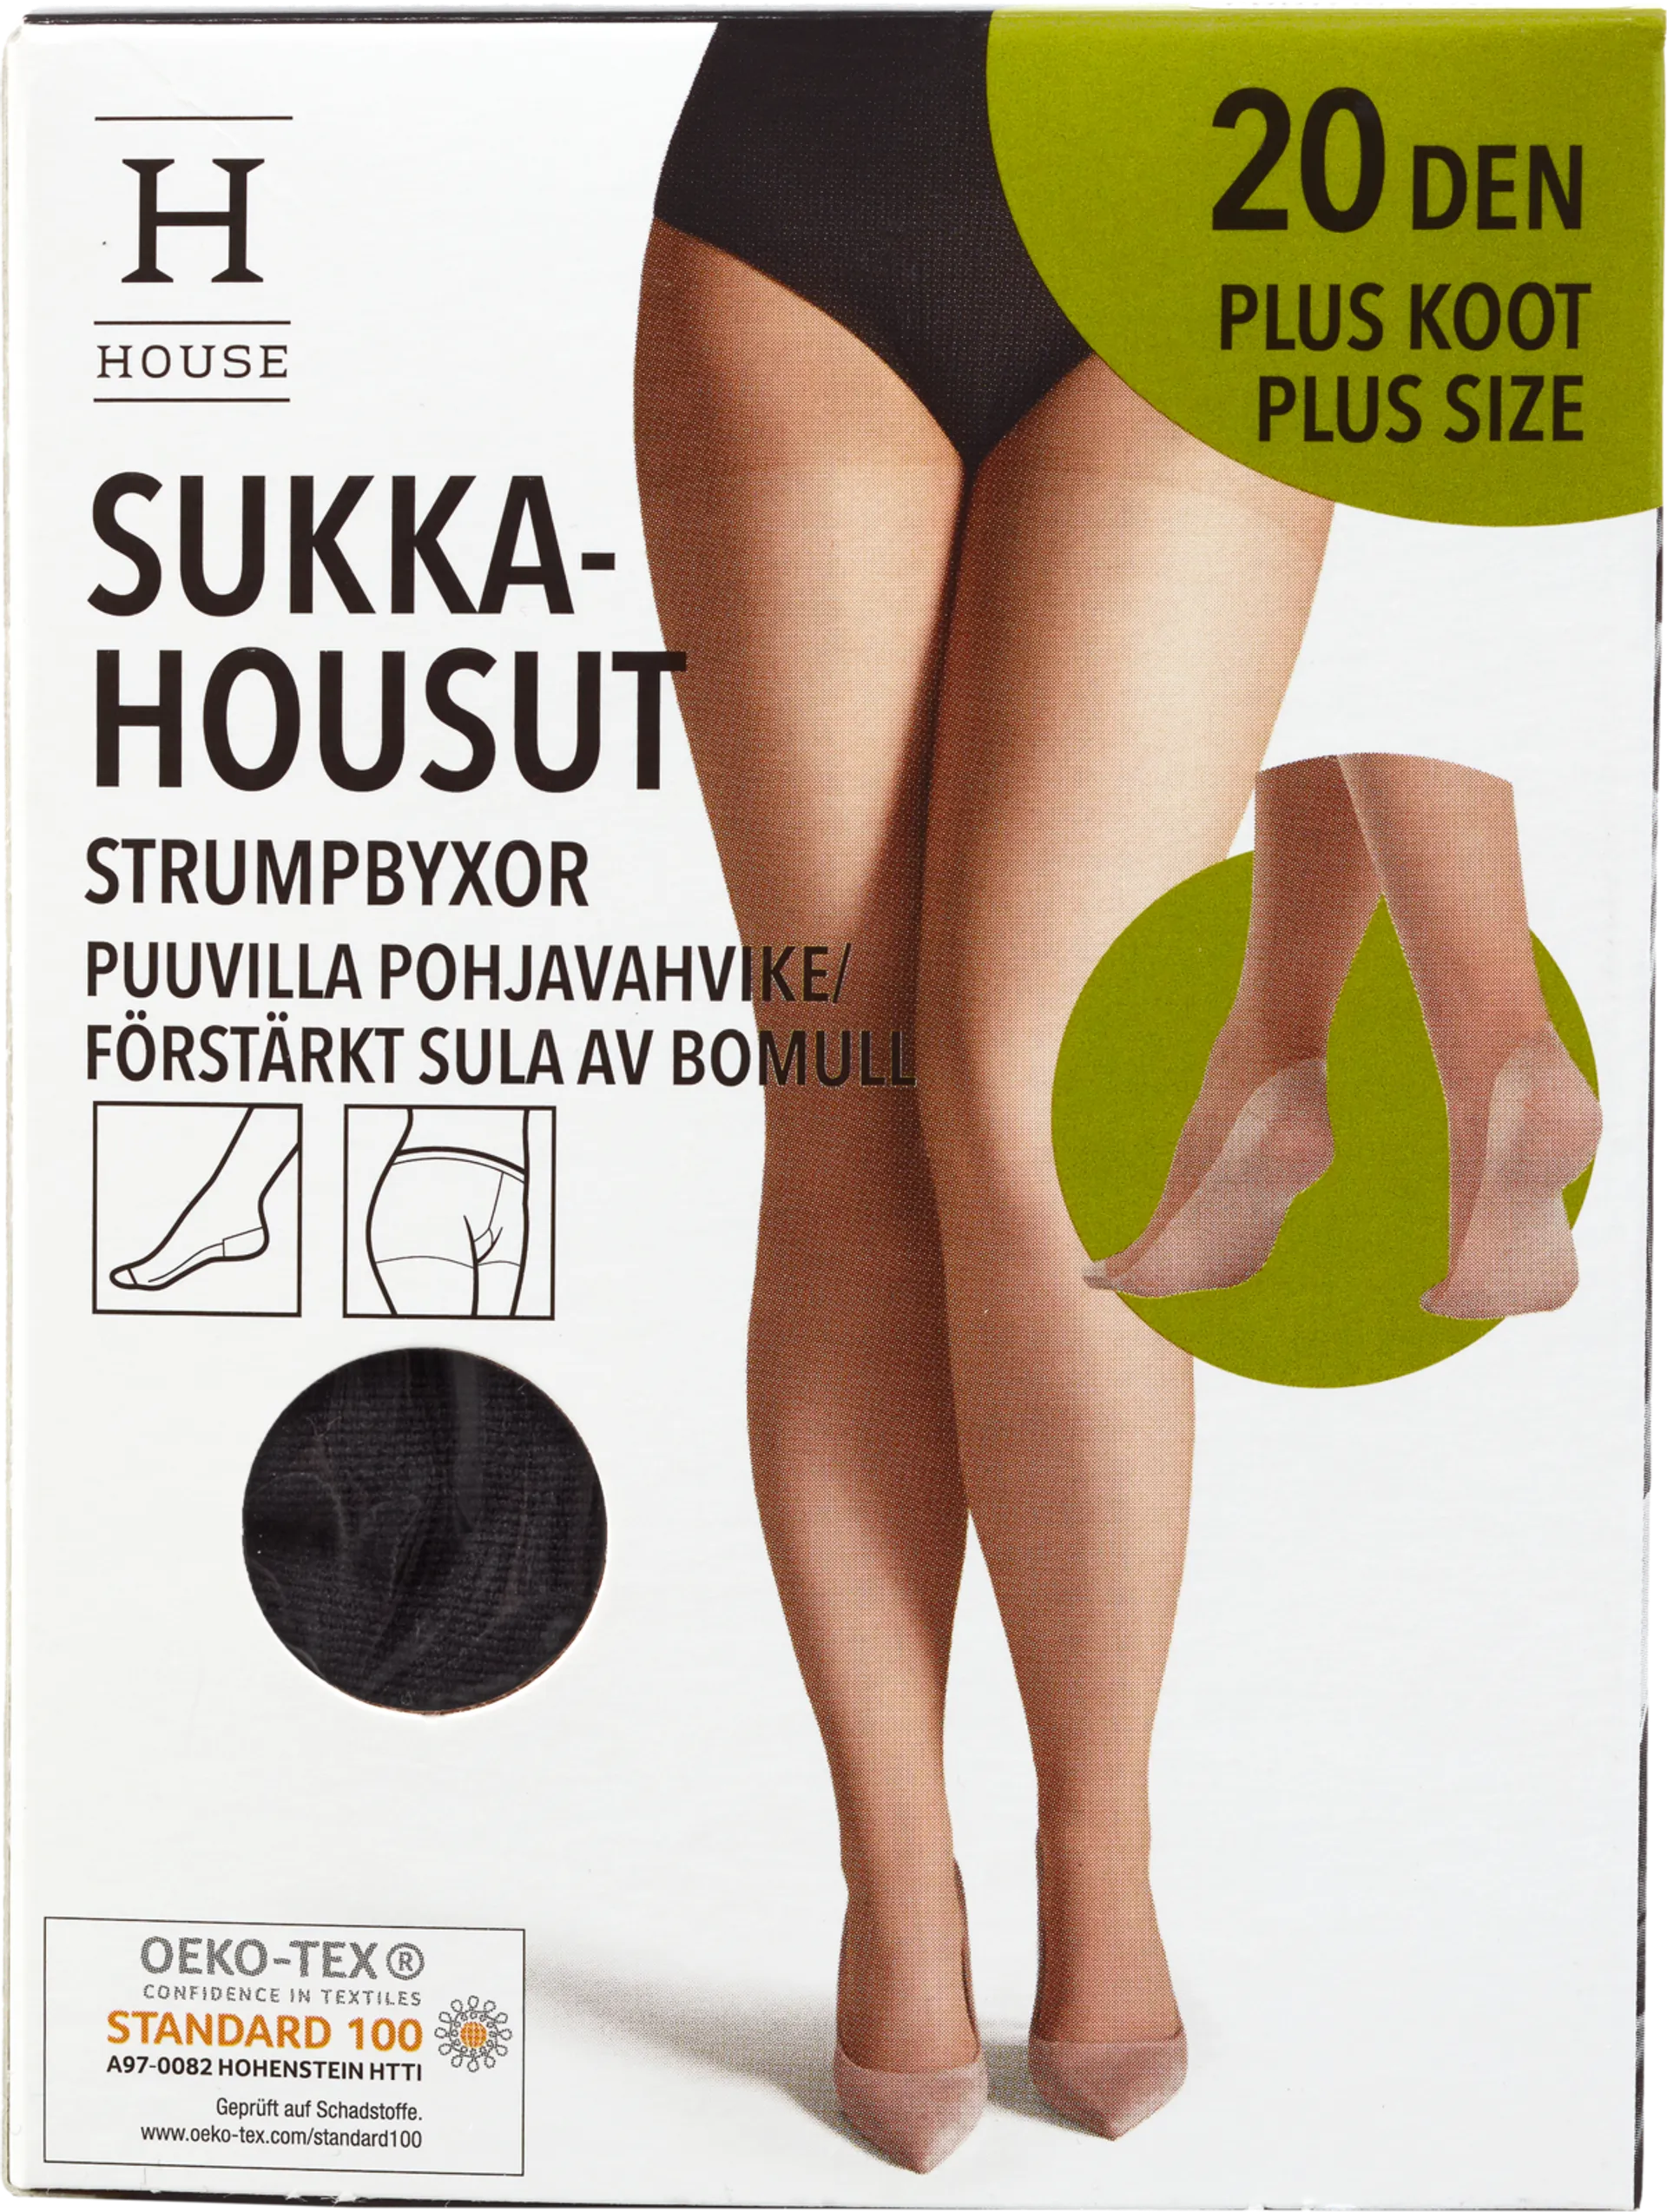 House naisten sukkahousut 20den plus puuvillapohjavahvike AT4890 - BLACK